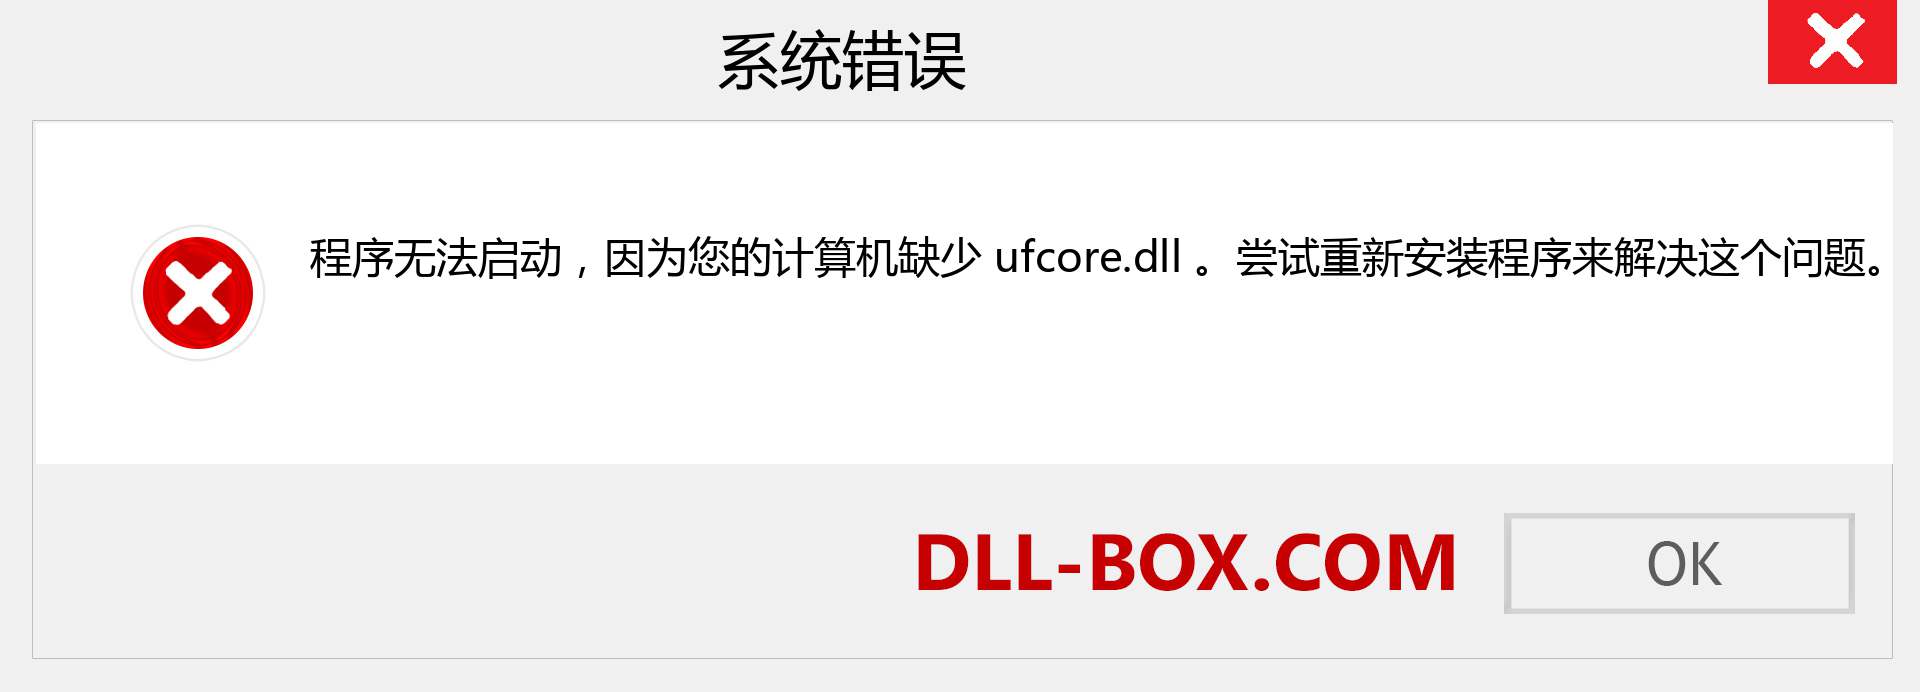 ufcore.dll 文件丢失？。 适用于 Windows 7、8、10 的下载 - 修复 Windows、照片、图像上的 ufcore dll 丢失错误